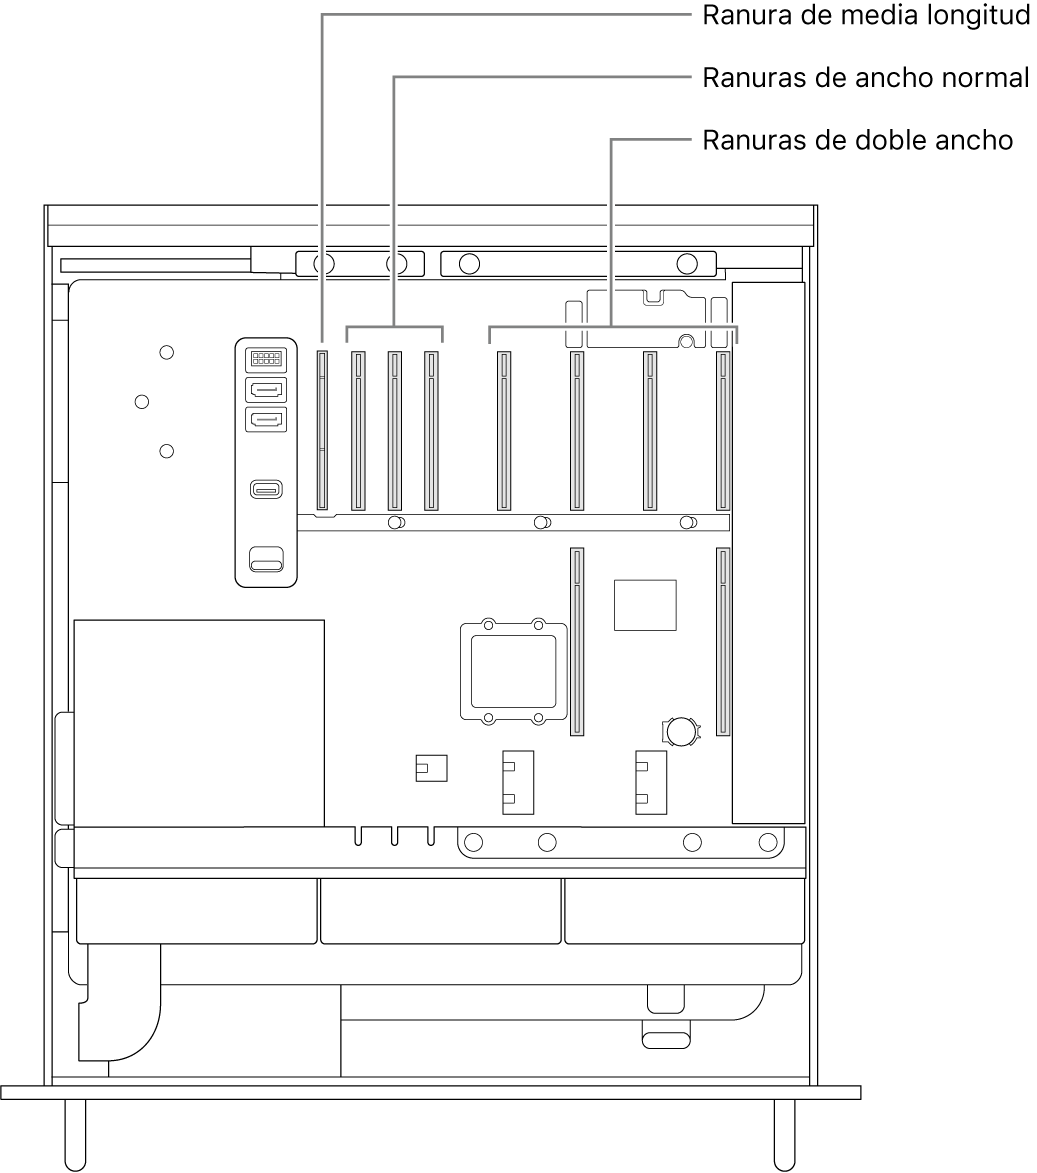 Vista lateral de la Mac Pro abierta con indicaciones mostrando dónde se ubican las cuatro ranuras de doble ancho, las tres de ancho normal y la de media longitud.